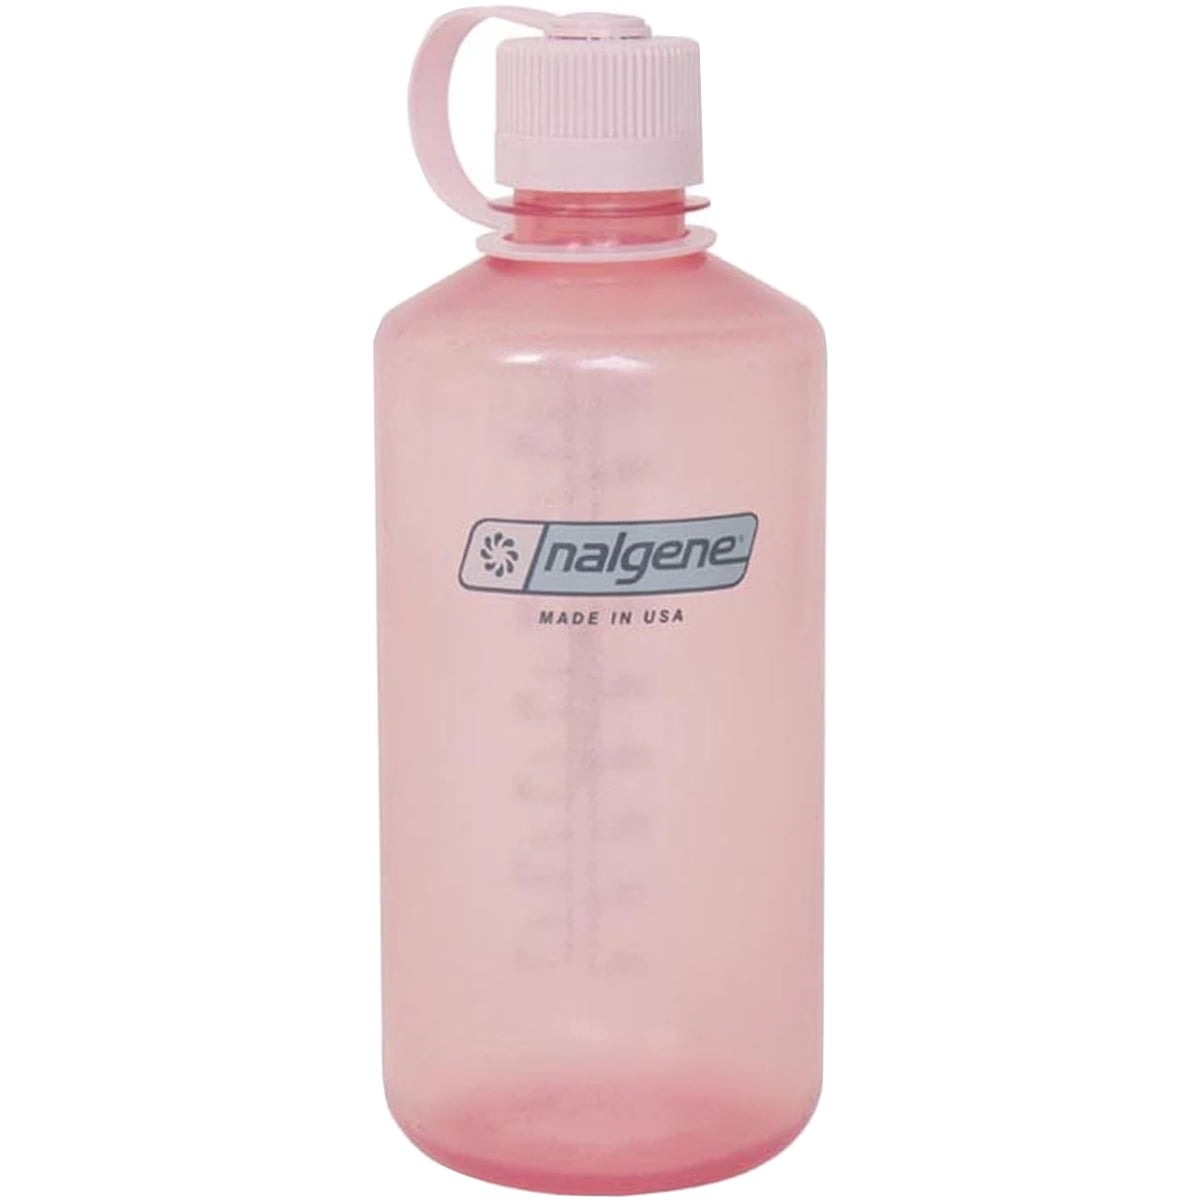 Nalgene Pink Water Bottles